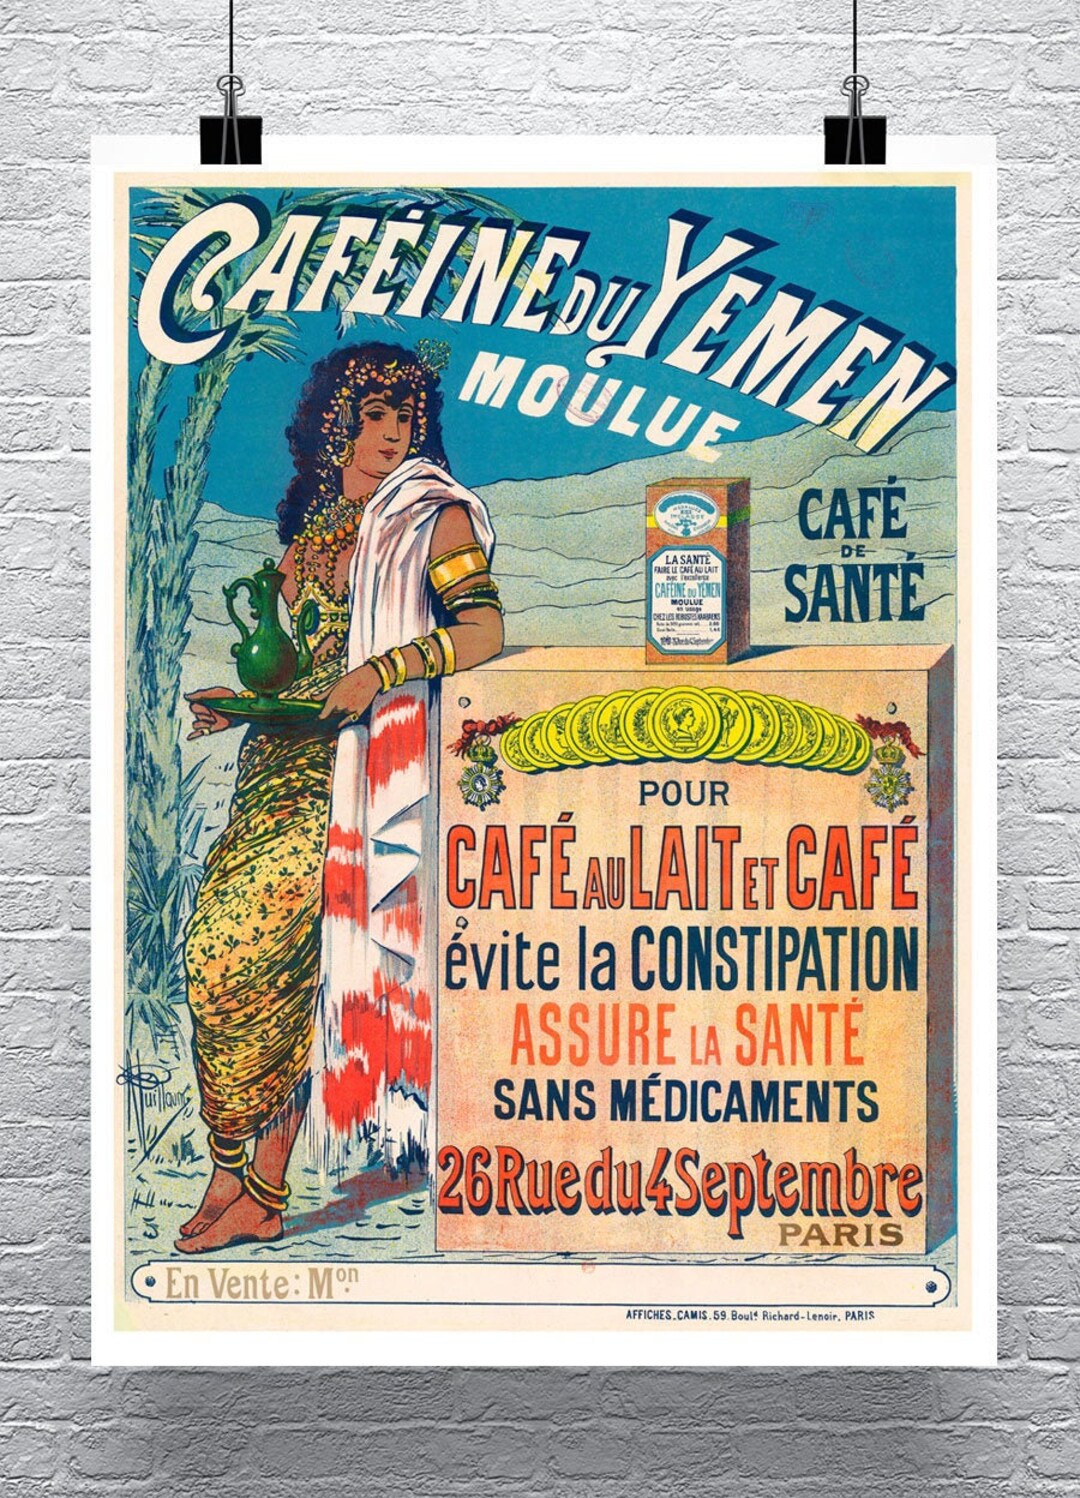 CAFÉS RICHARD - L'art français du café